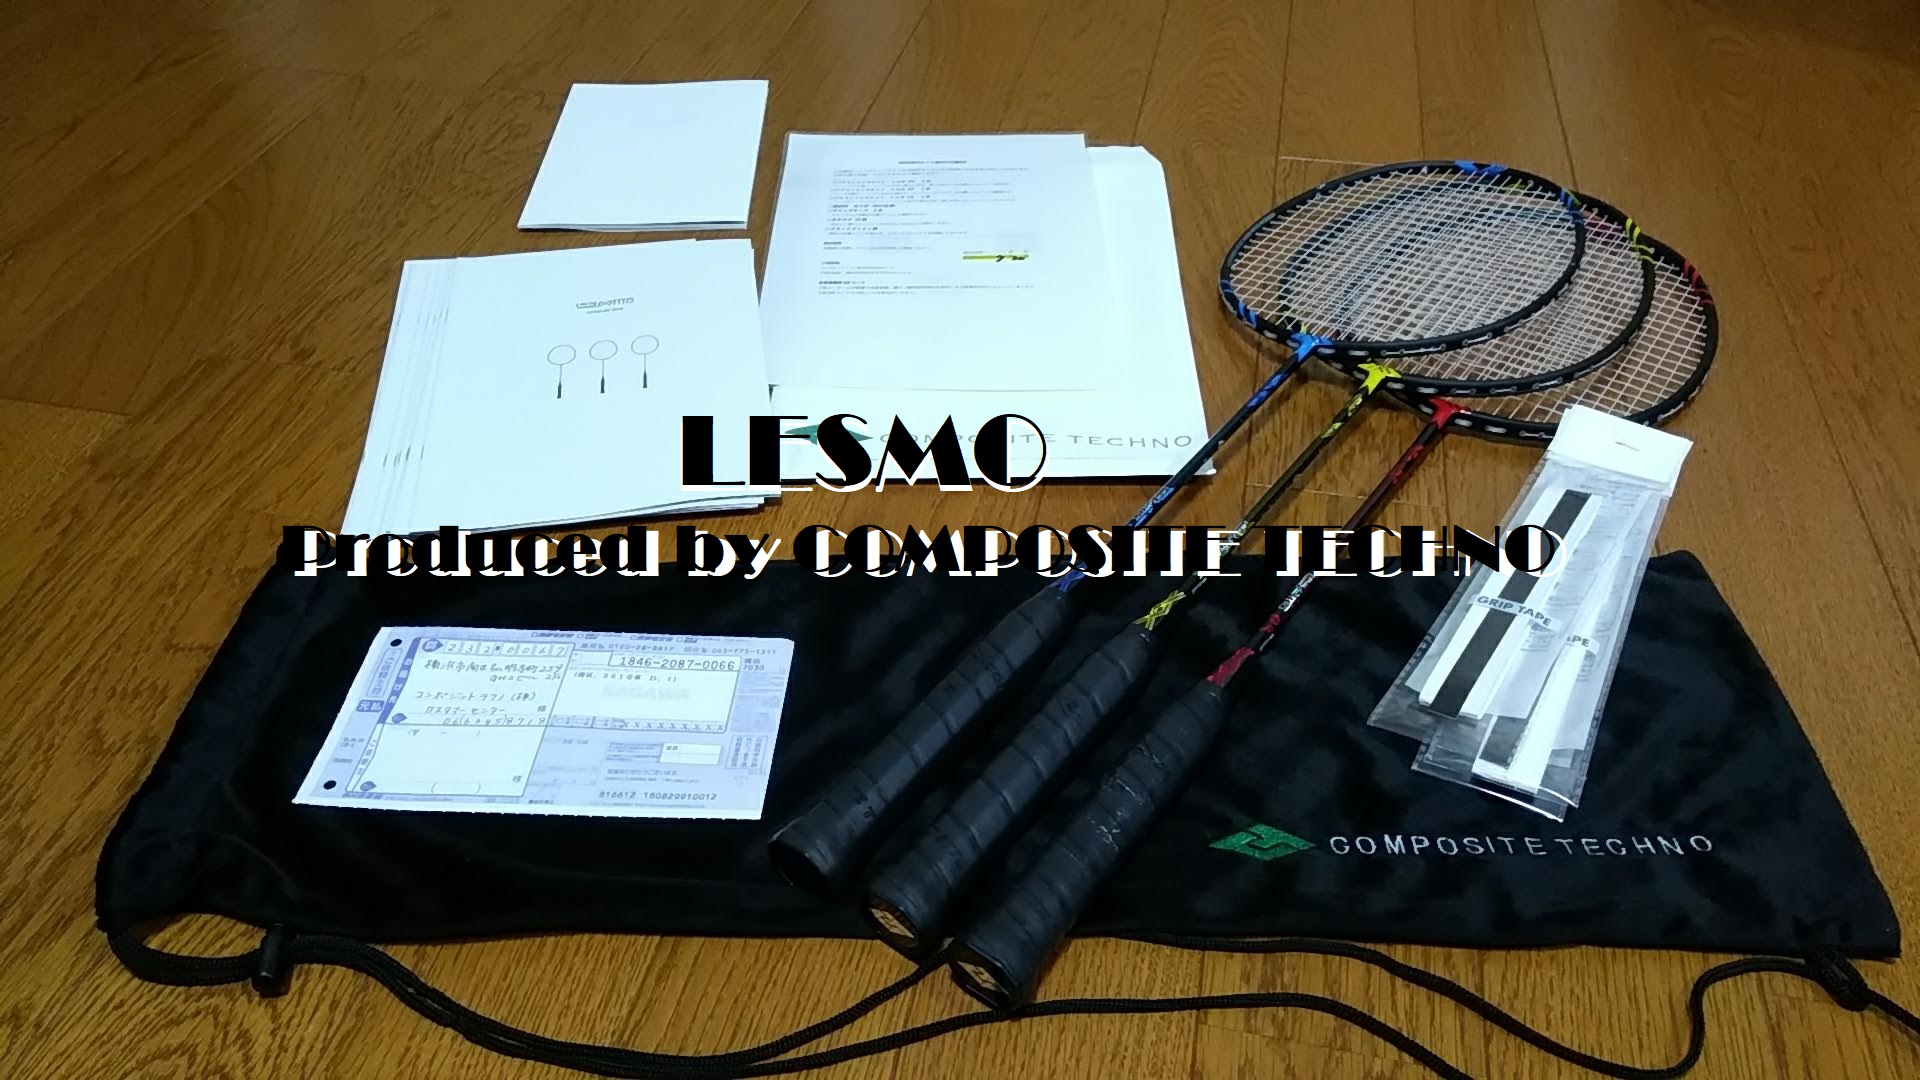 コンポジットテクノのバドミントンラケット『Lesmo』の試打セットレビュー